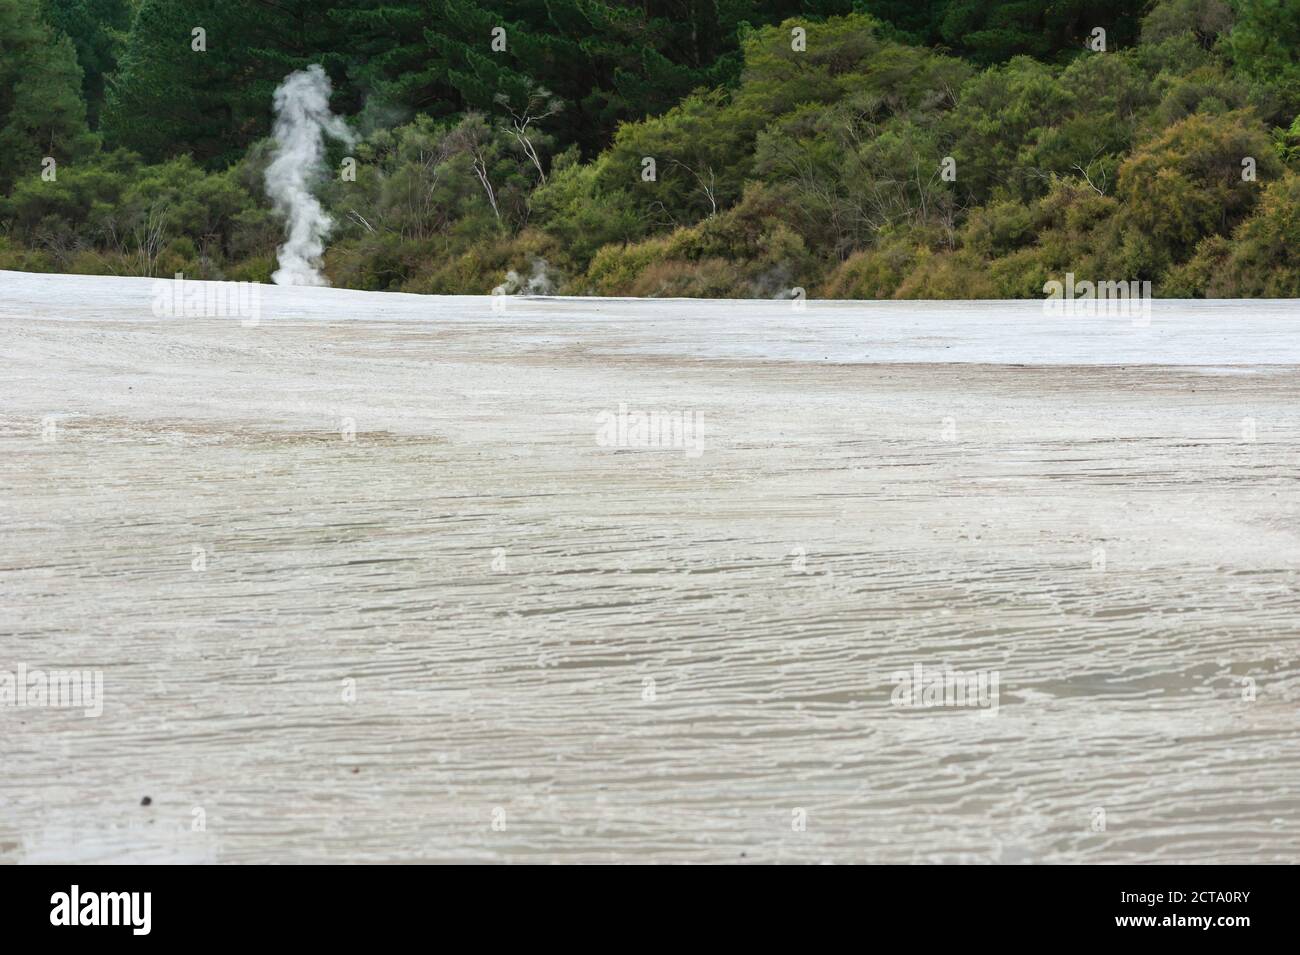 Nouvelle Zélande, île du Nord, la baie de Plenty, Rotorua, Wai-O-Tapu, sinter terrasse avec fumerolle Banque D'Images